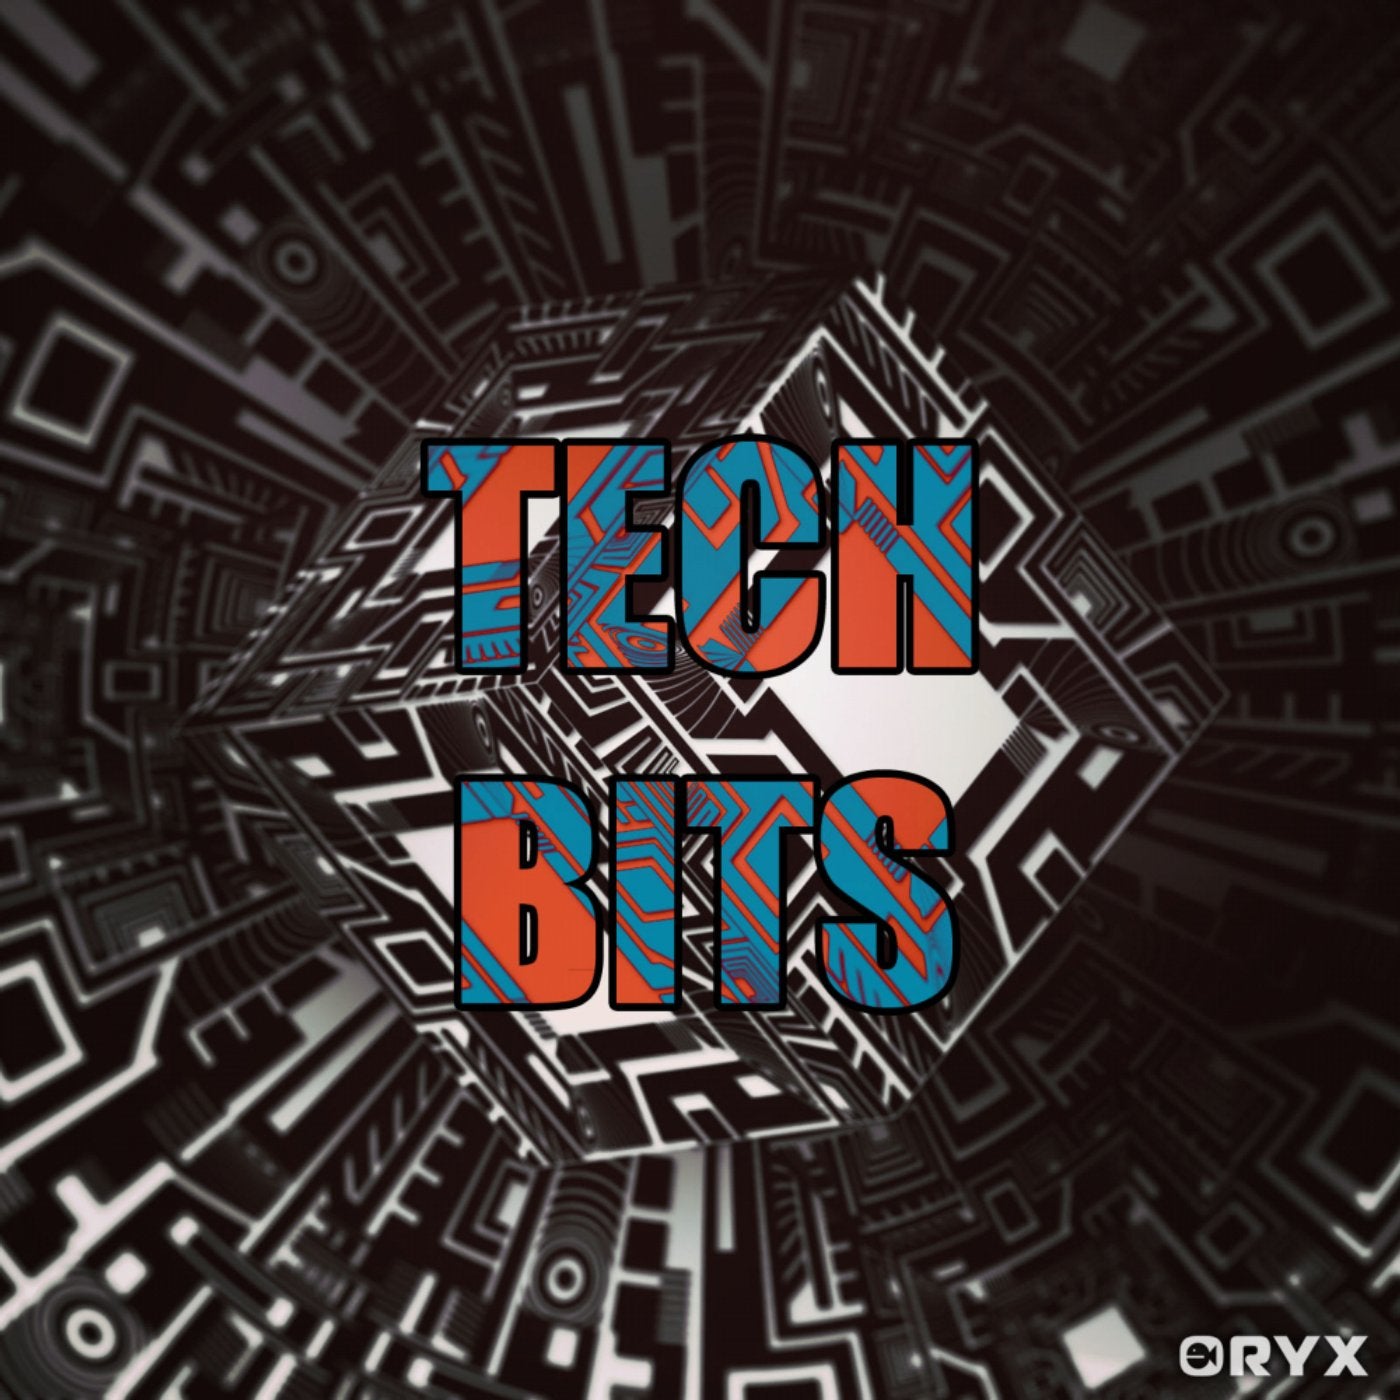 Tech Bits